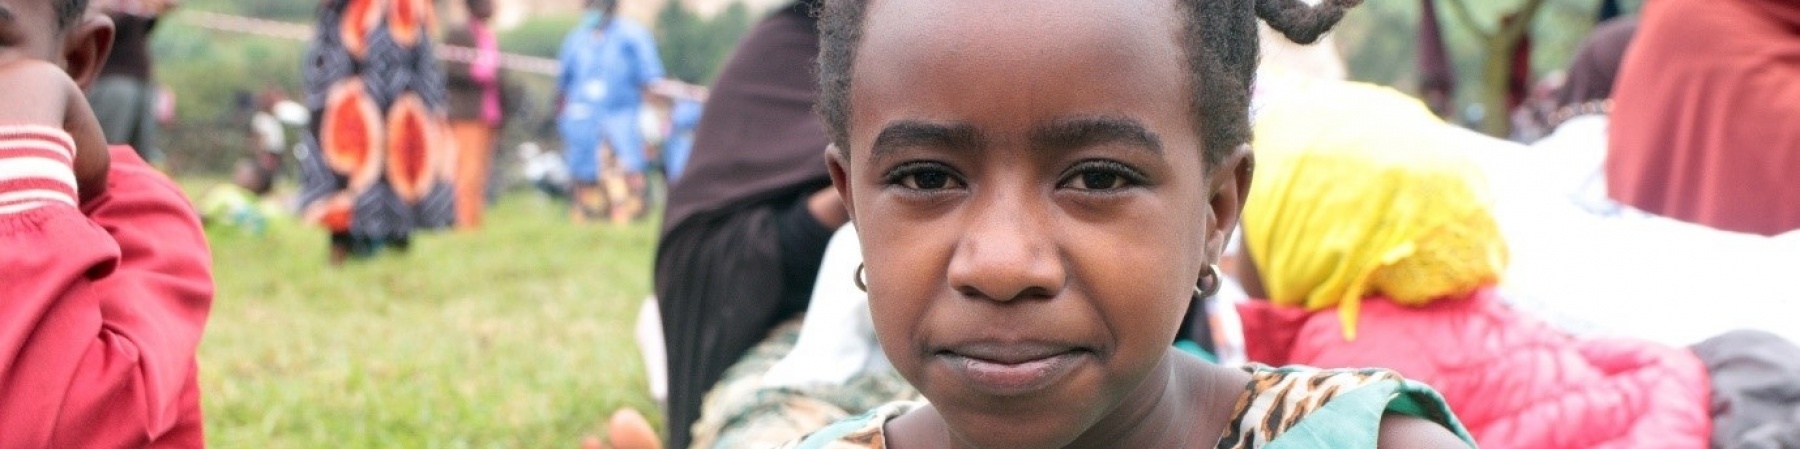 primo piano di una bambina ugandese in campo rifugiati del Rwanda